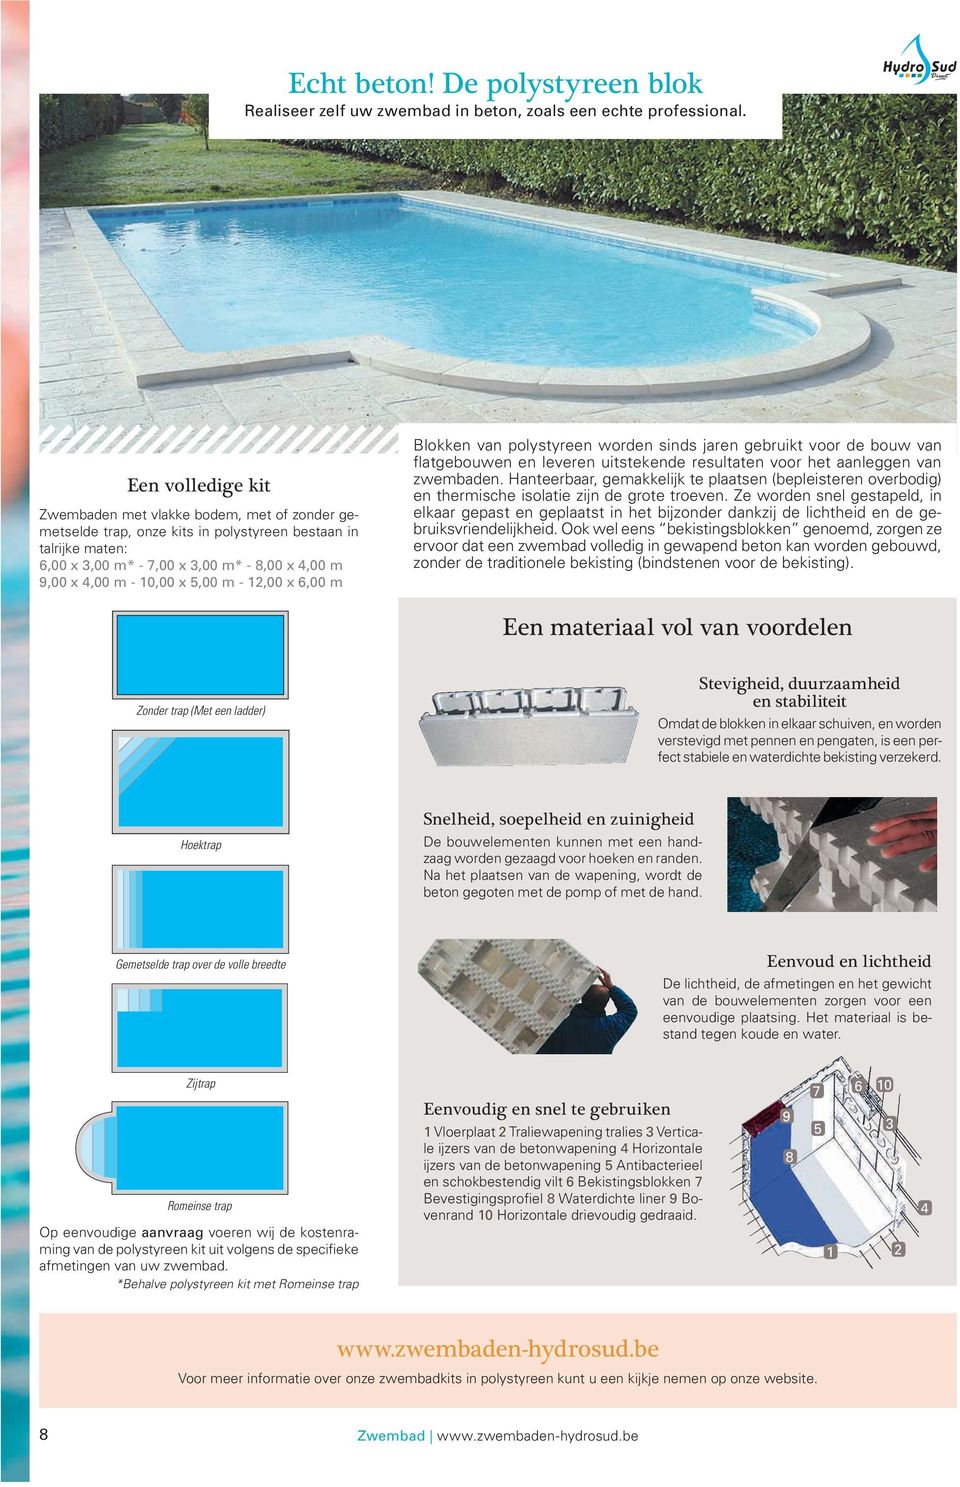 x 5,00 m - 12,00 x 6,00 m Blokken van polystyreen worden sinds jaren gebruikt voor de bouw van flatgebouwen en leveren uitstekende resultaten voor het aanleggen van zwembaden.